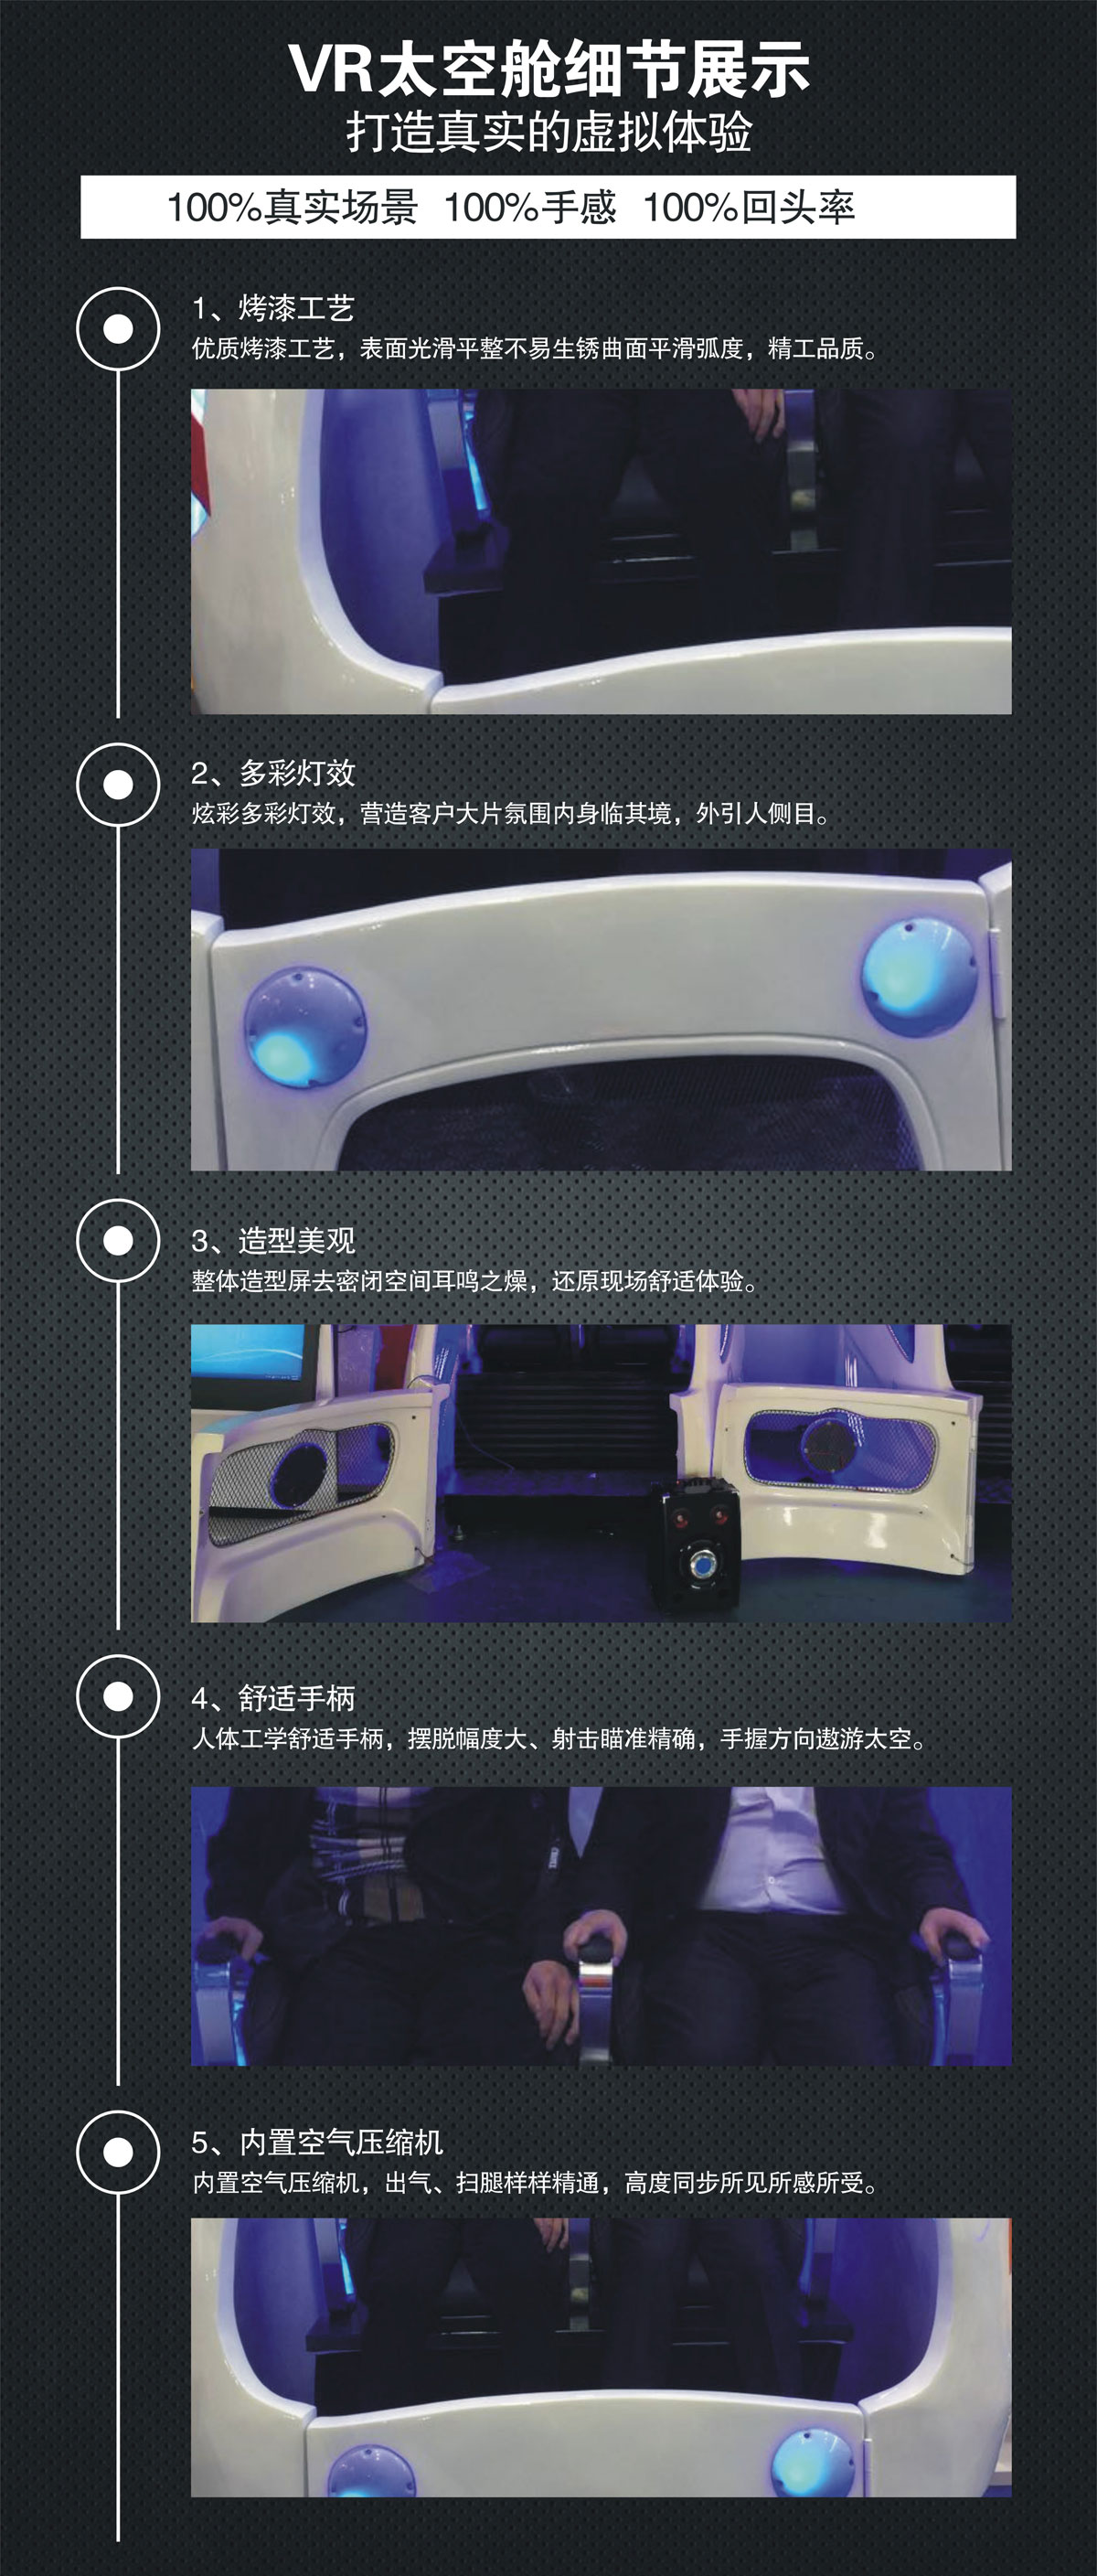 教育体验VR太空舱细节展示.jpg